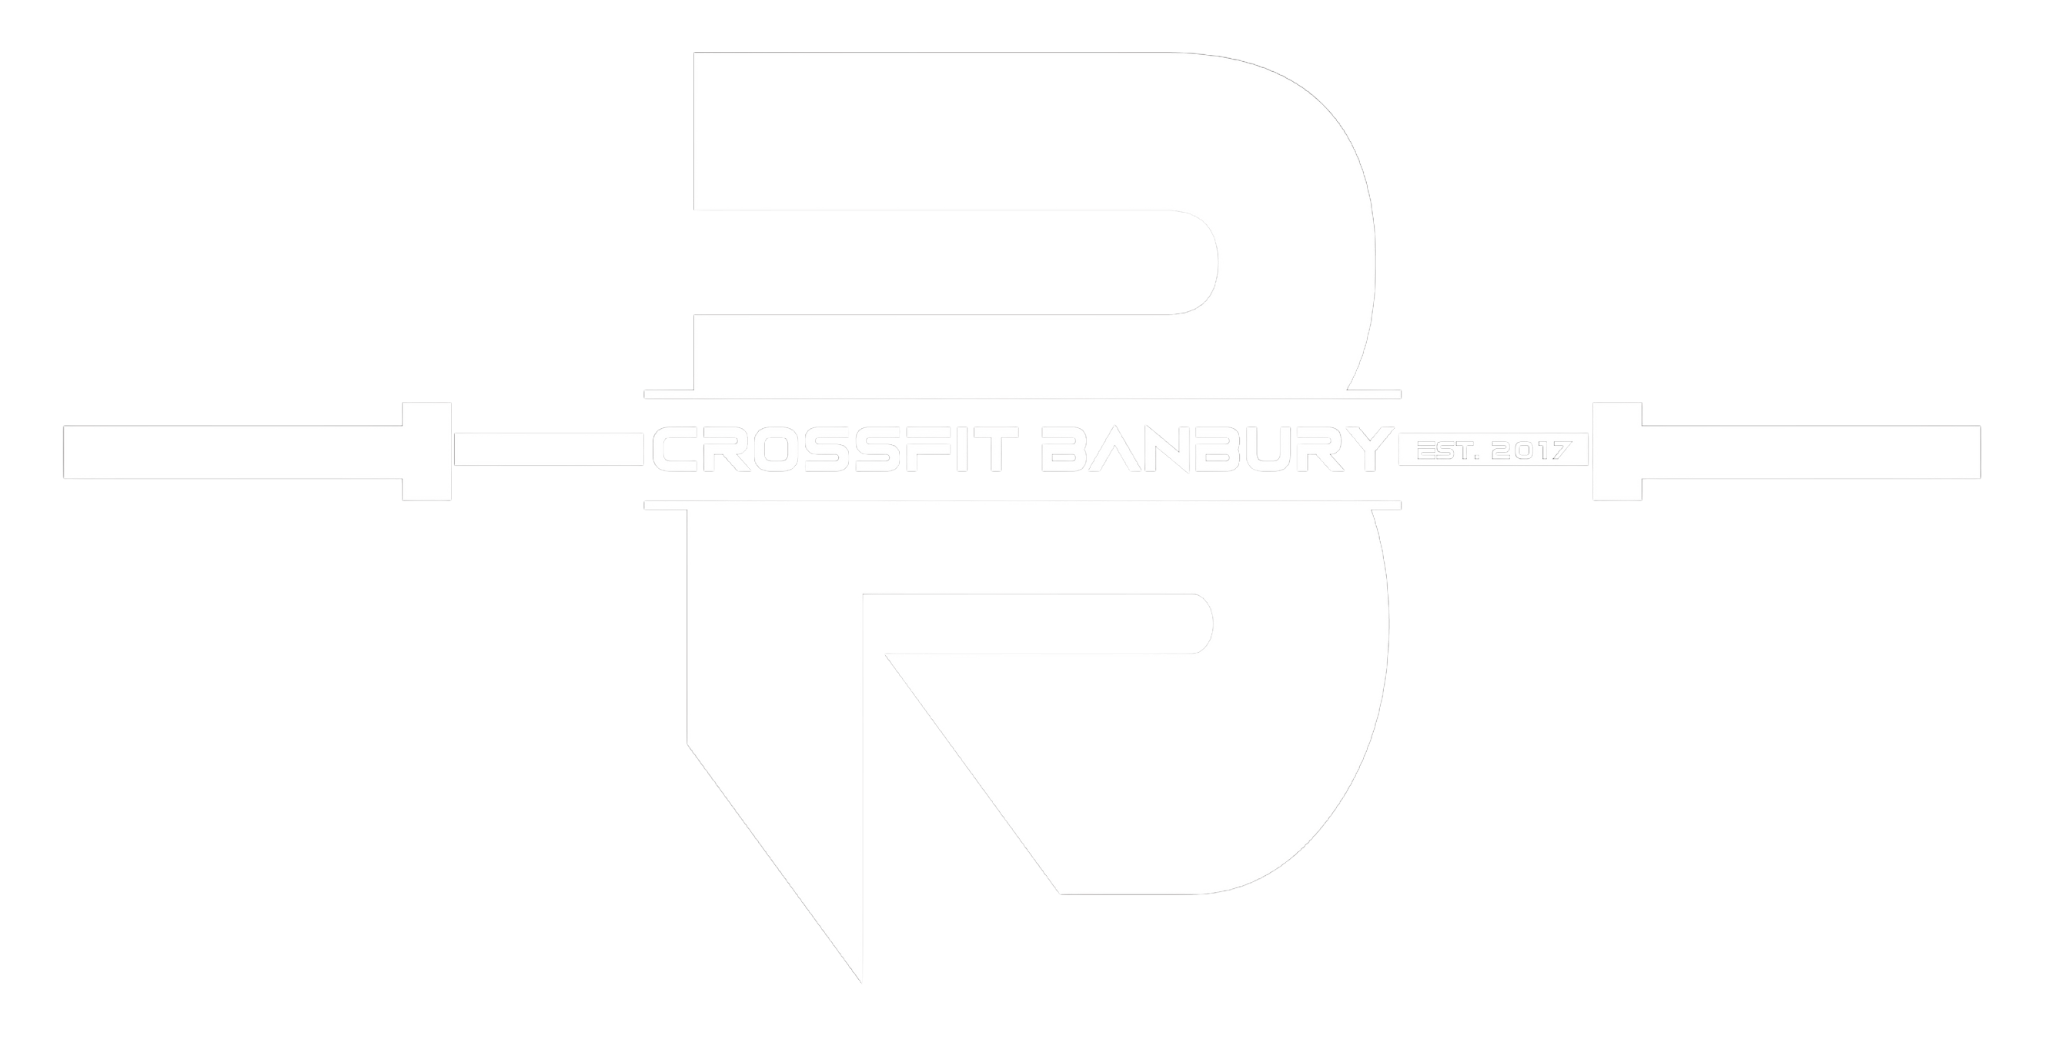 CrossFit Banbury 